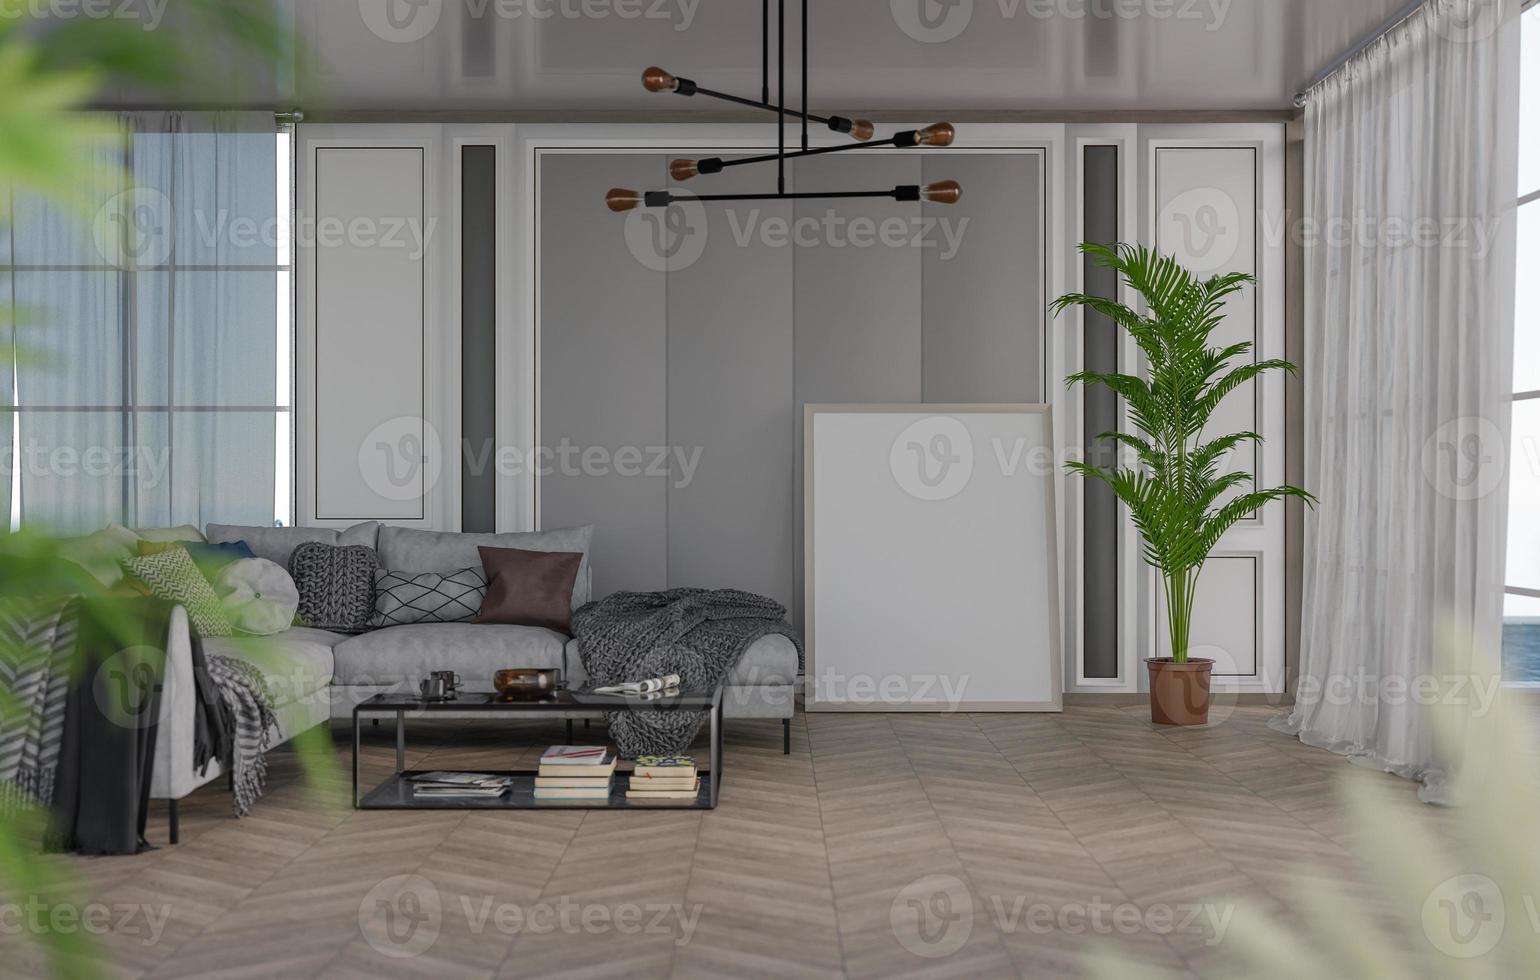 Marco de fotos en blanco de maqueta 3d en la representación de la sala de estar